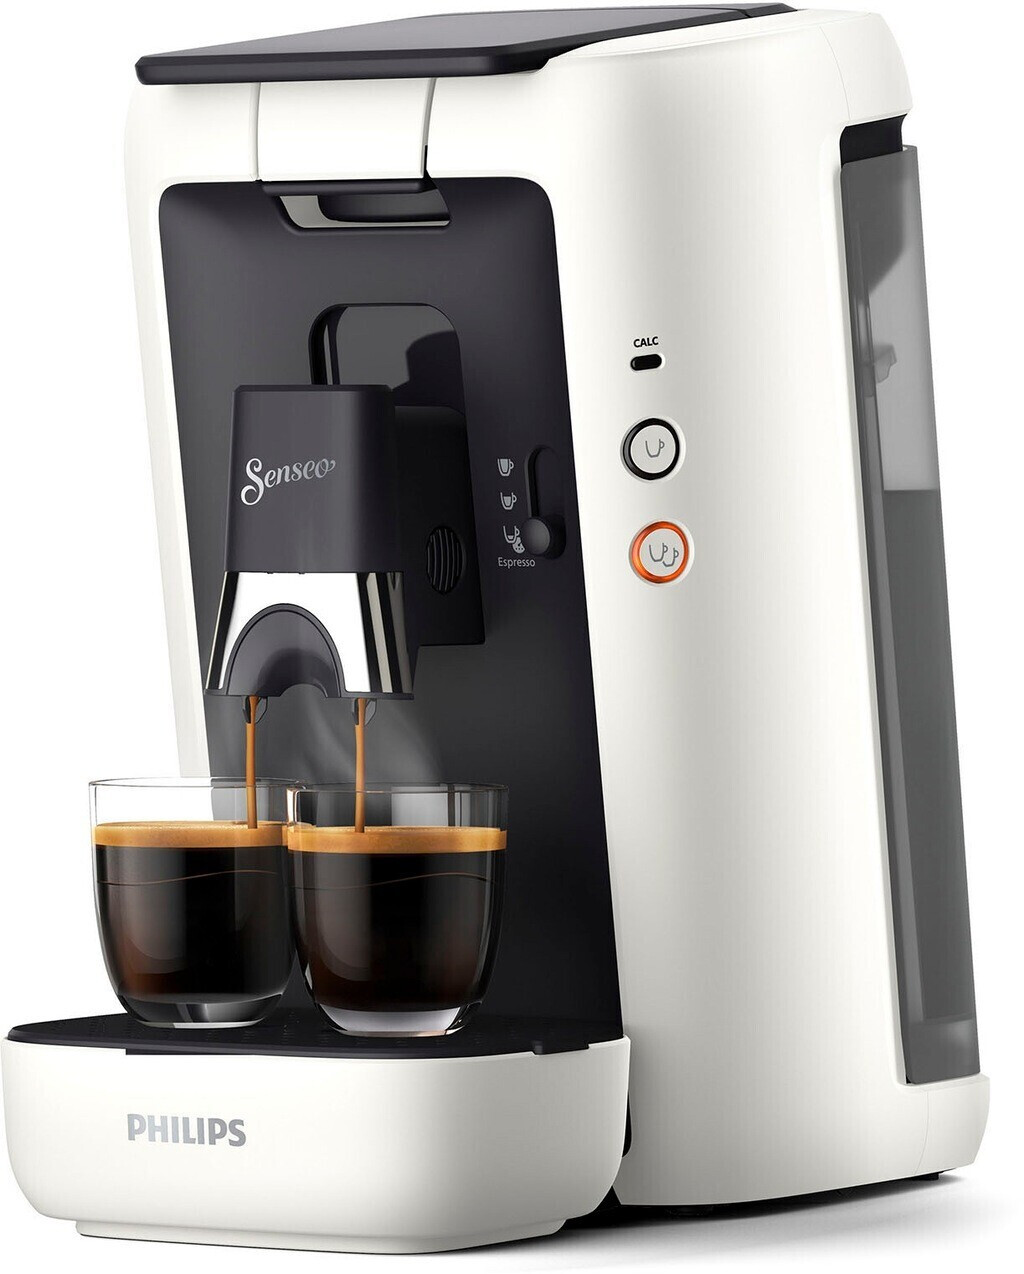 Philips Senseo Quadrante HD7865/60 coffee machine 1.2 L 8-cup coffee maker  Black